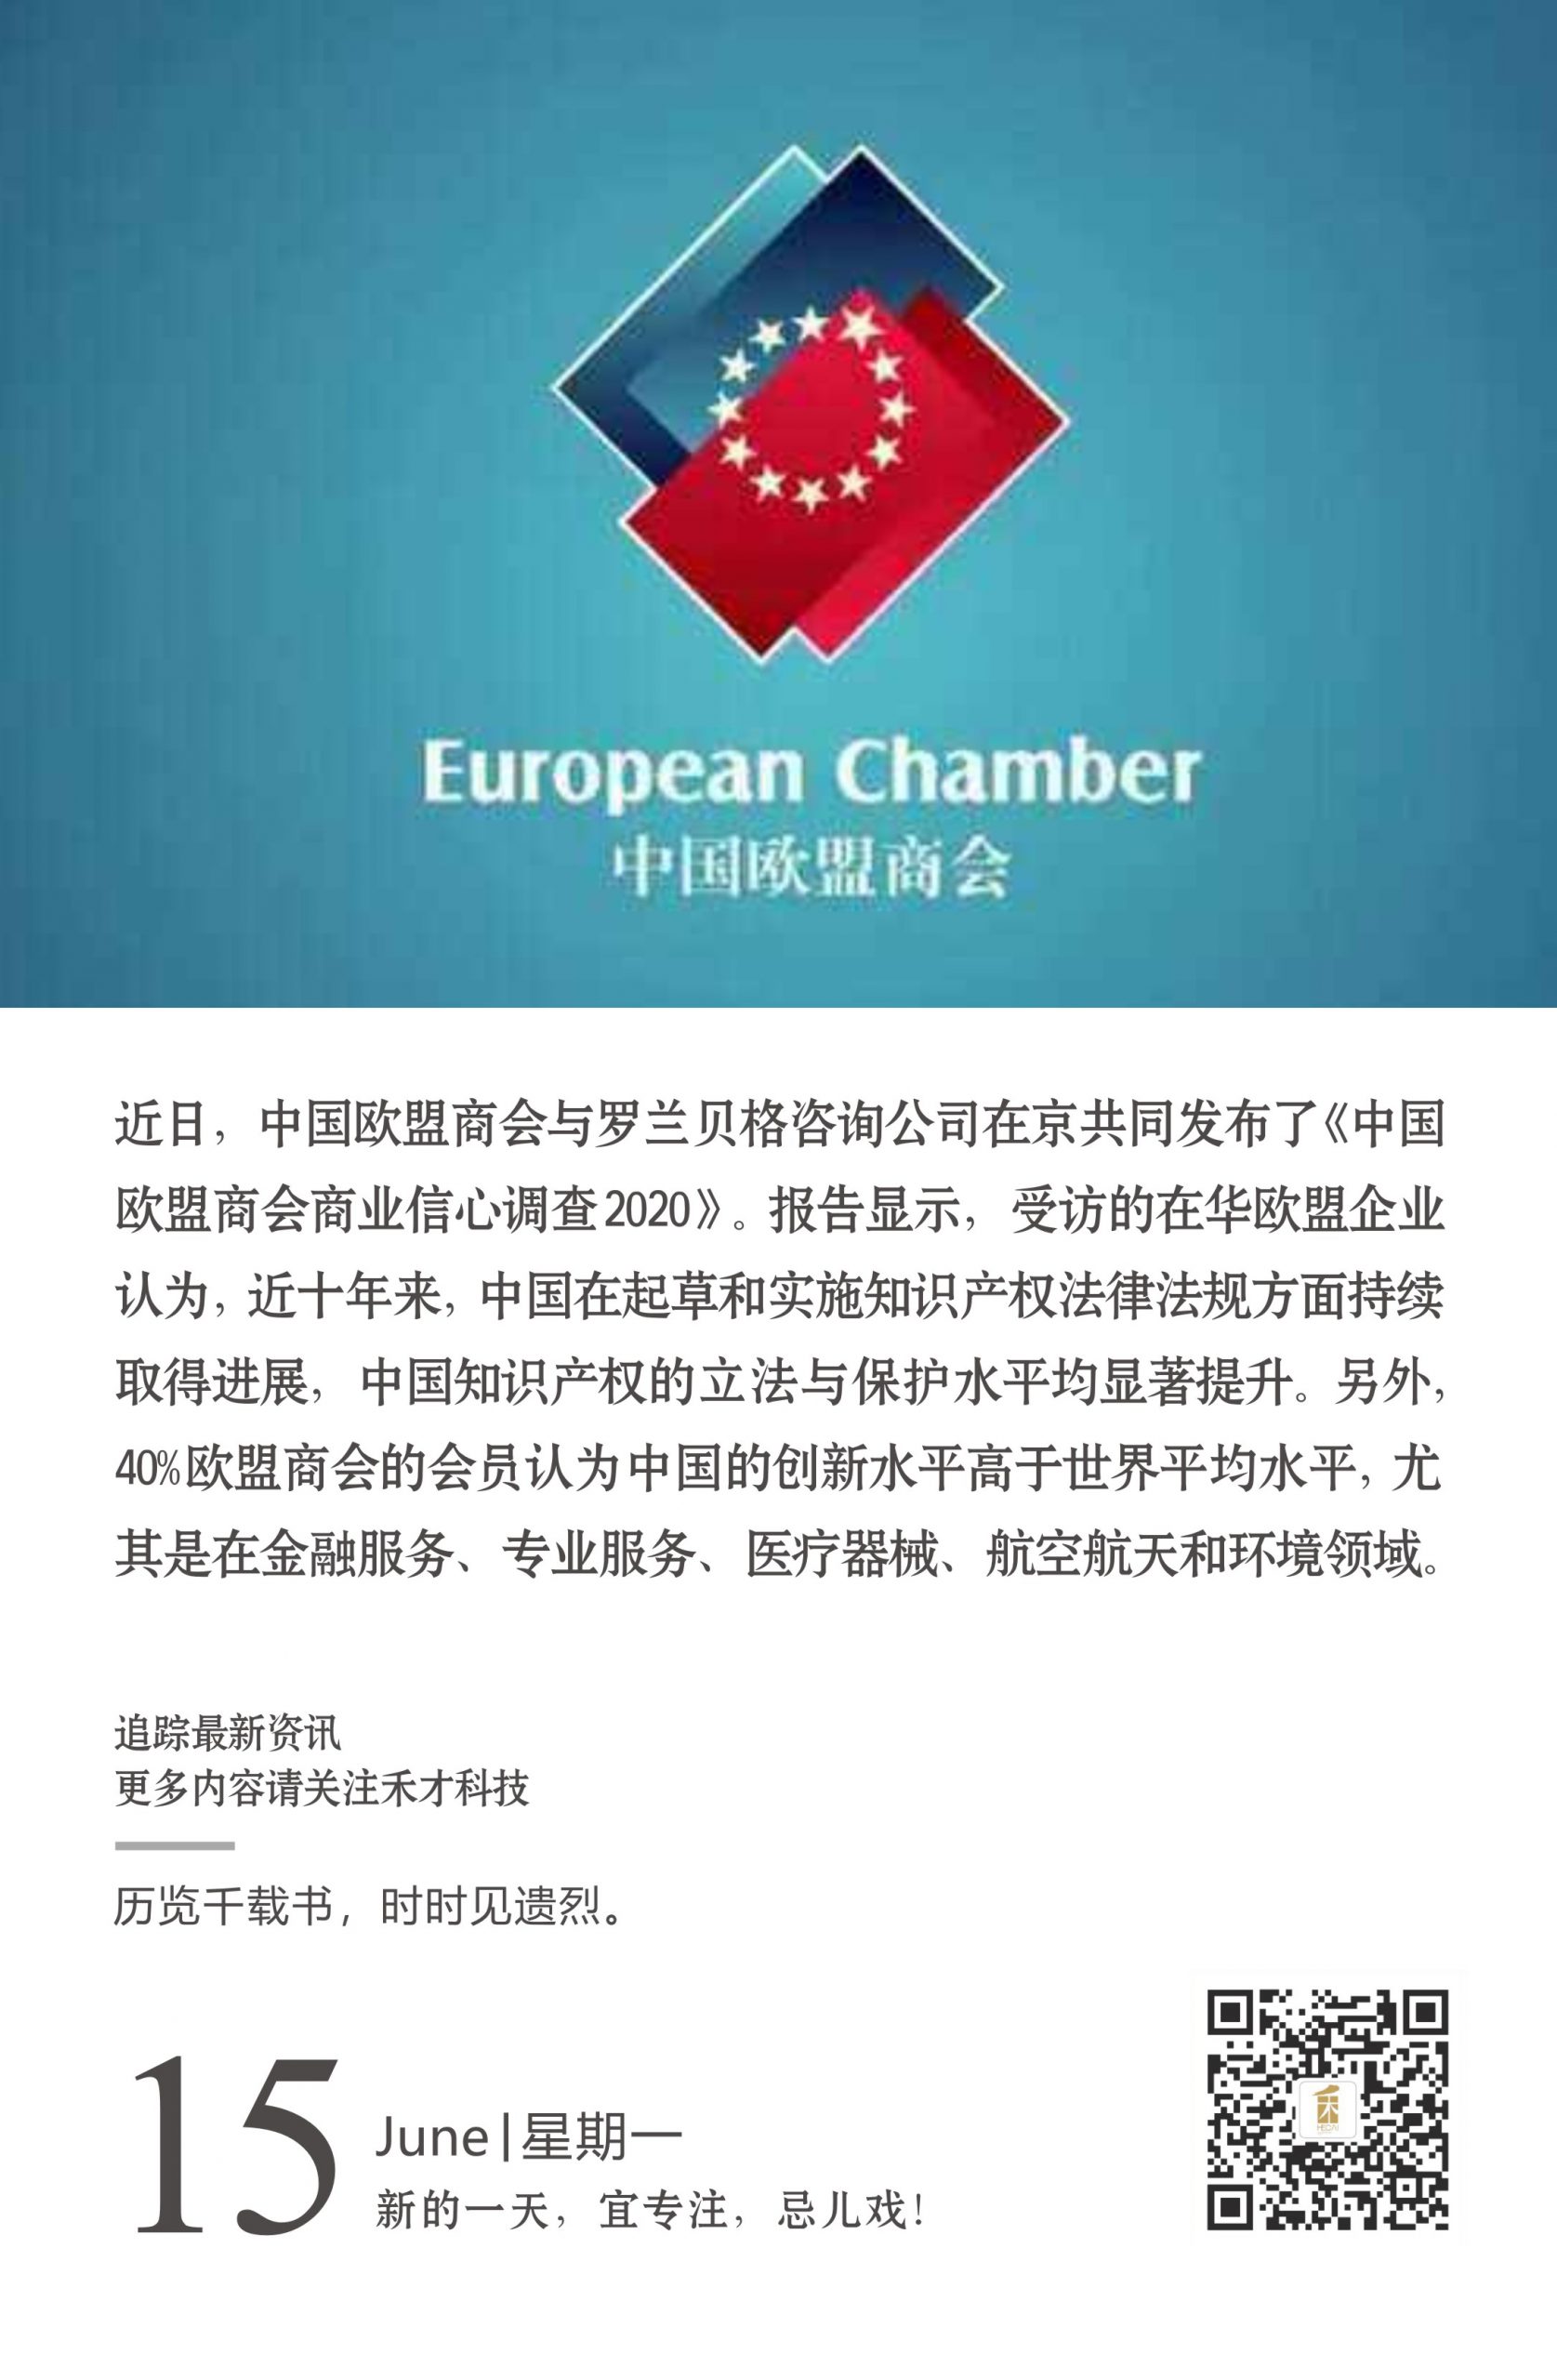 6.15快讯：《中国欧盟商会商业信心调查2020》显示：中国知识产权立法和保护水平显著提升。